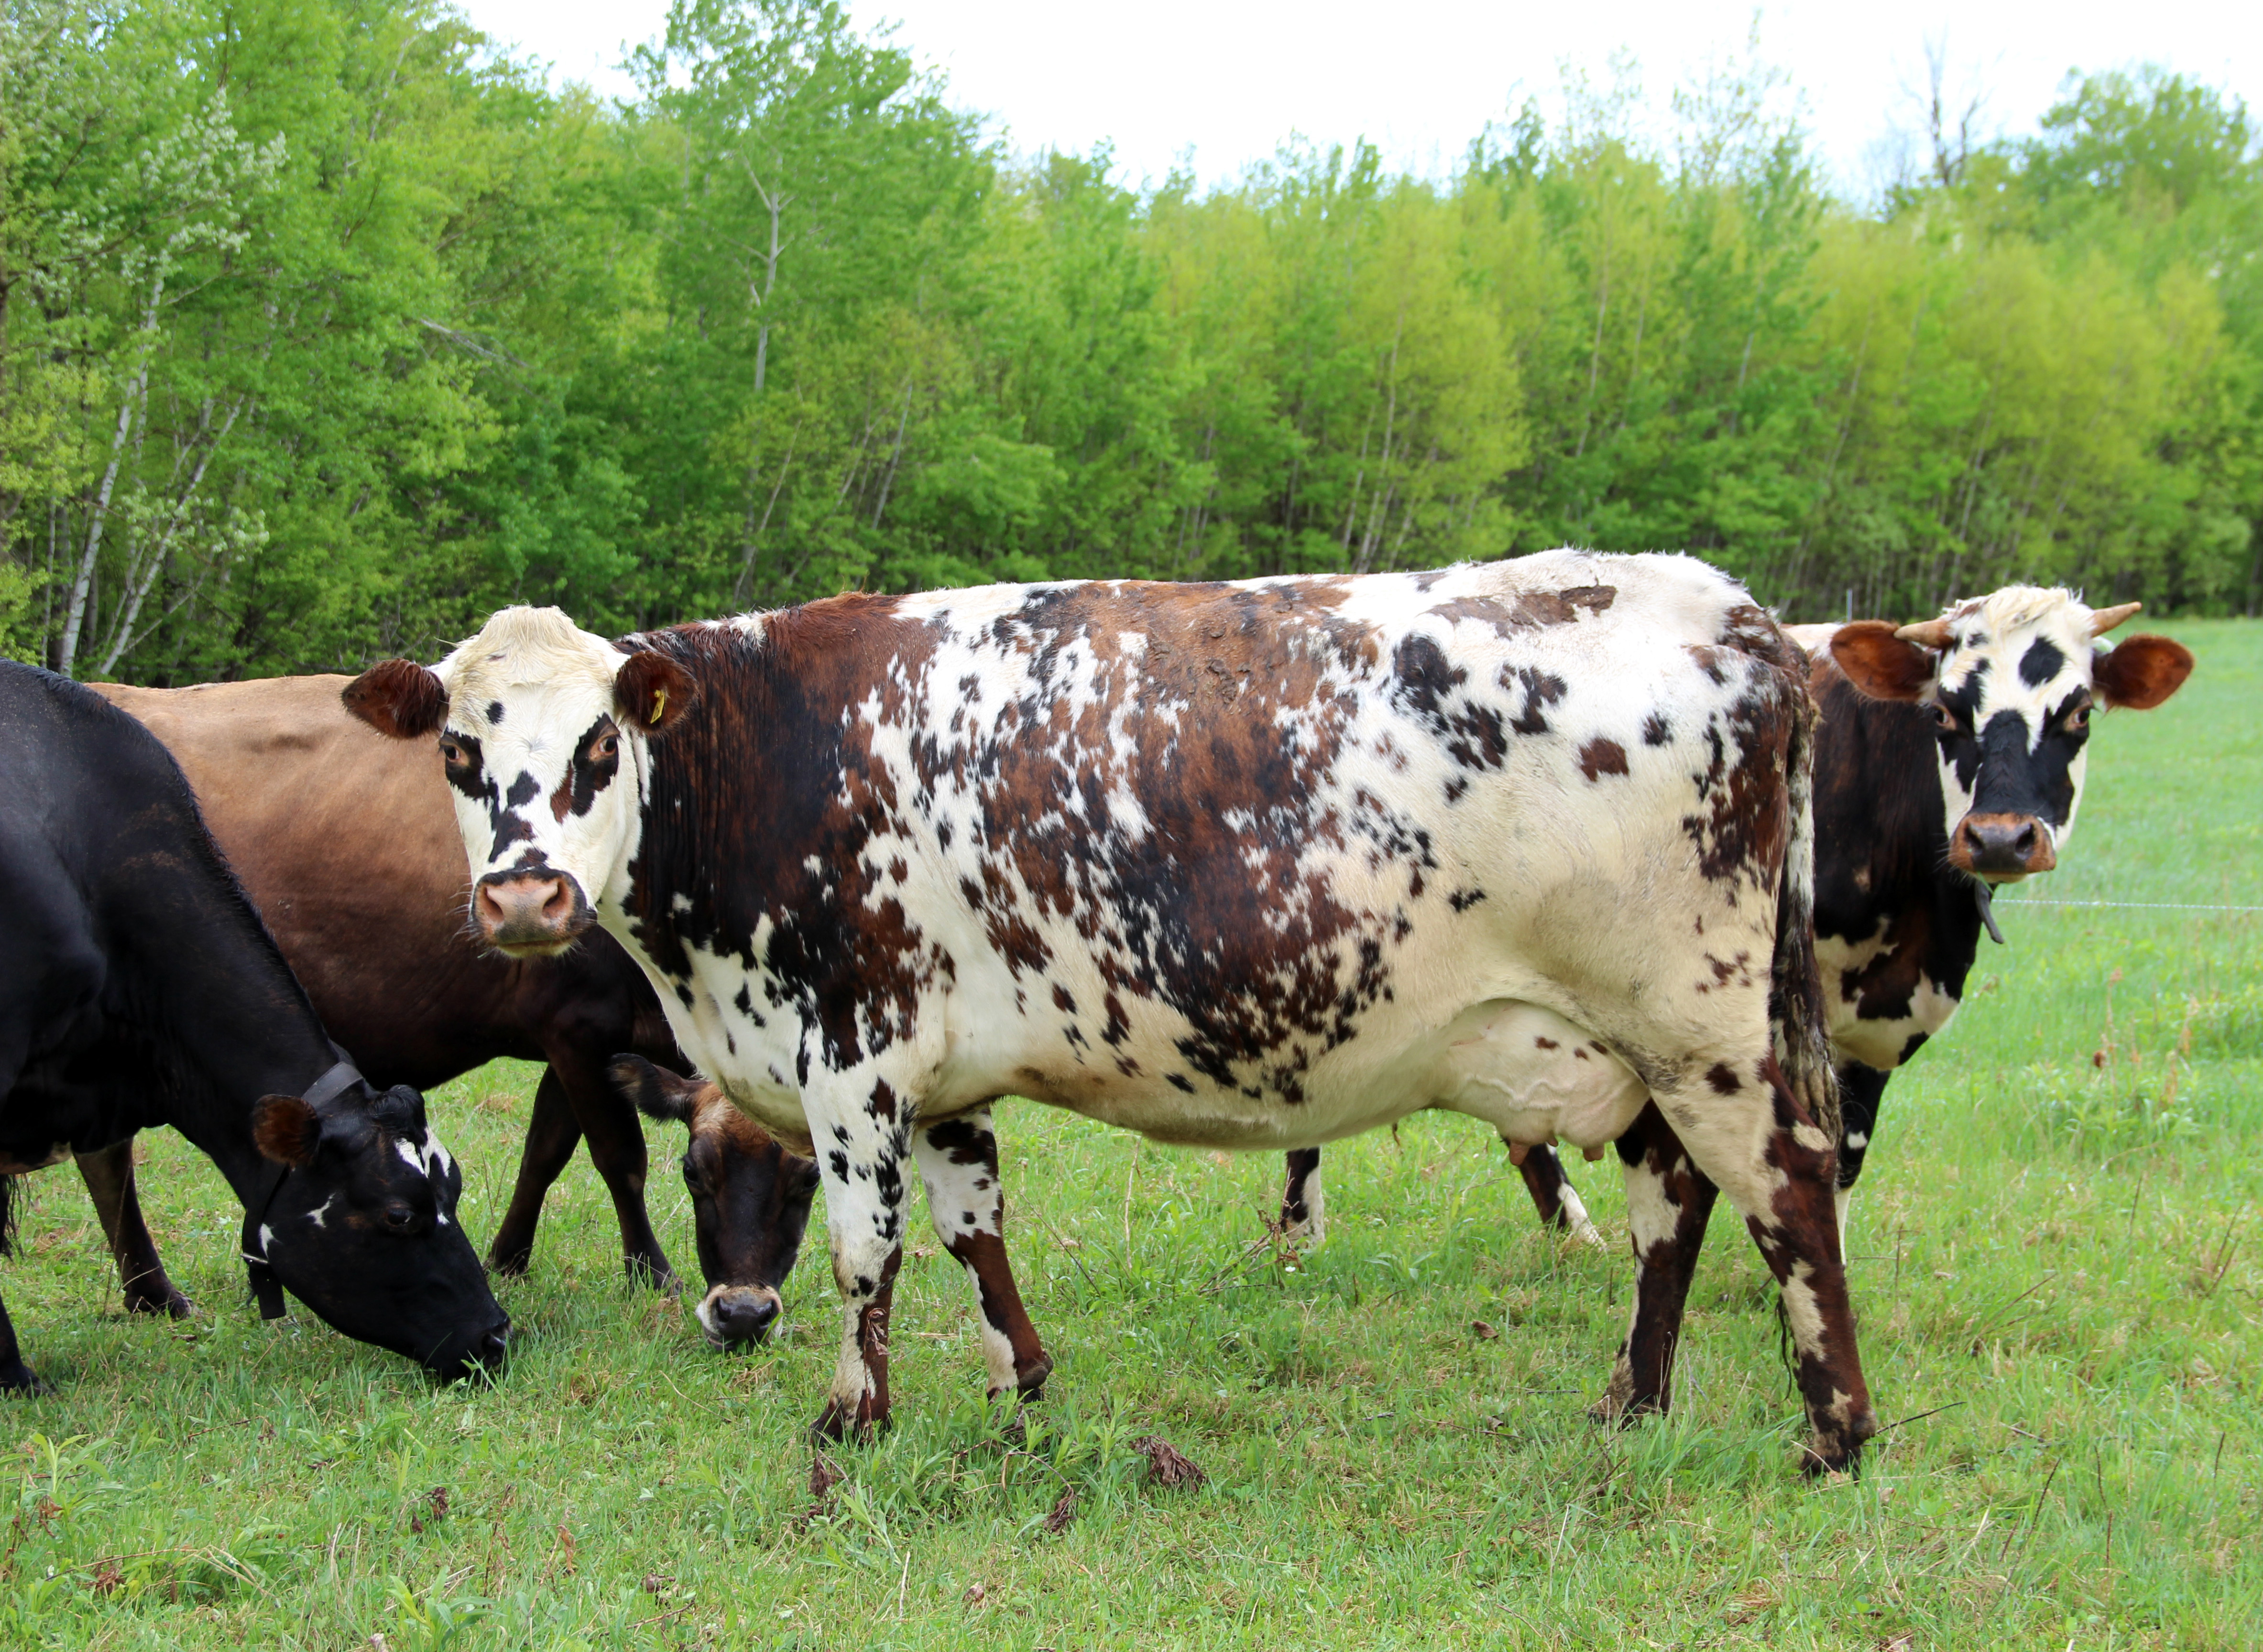 La vache Canadienne : la seule race laitière développée en Amérique du Nord  - La Terre de chez nous